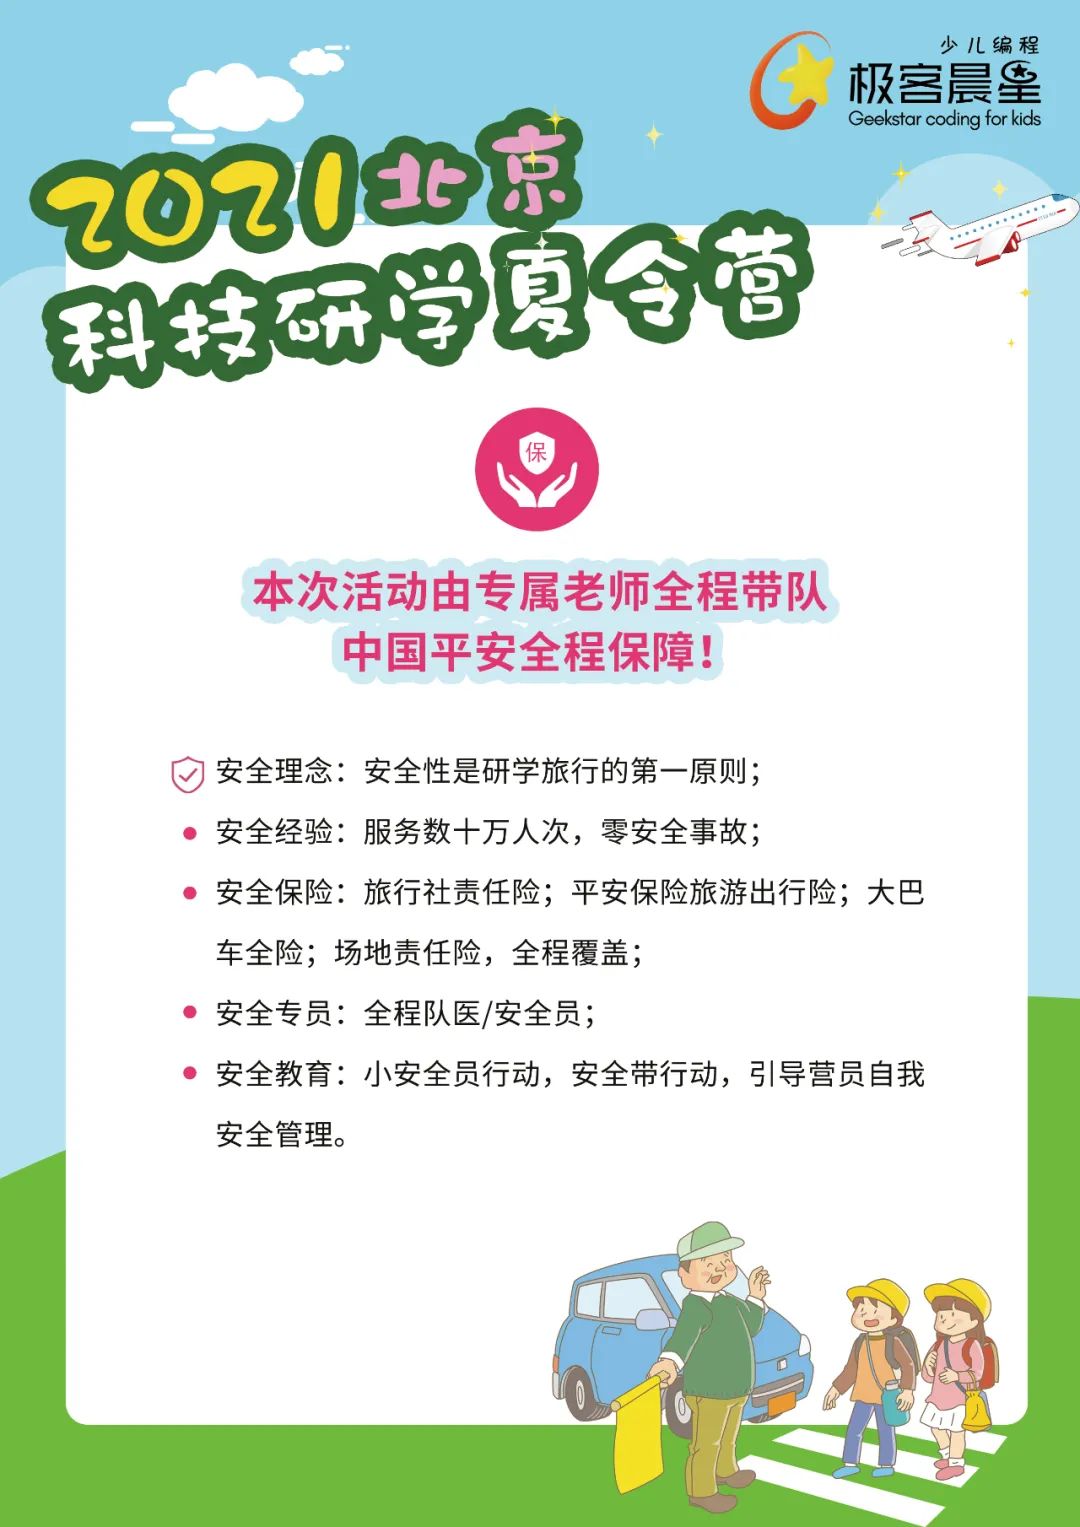 极客晨星：「极客少年 扬帆起航」2021北京科技研学之旅，给孩子一个难忘的暑假！